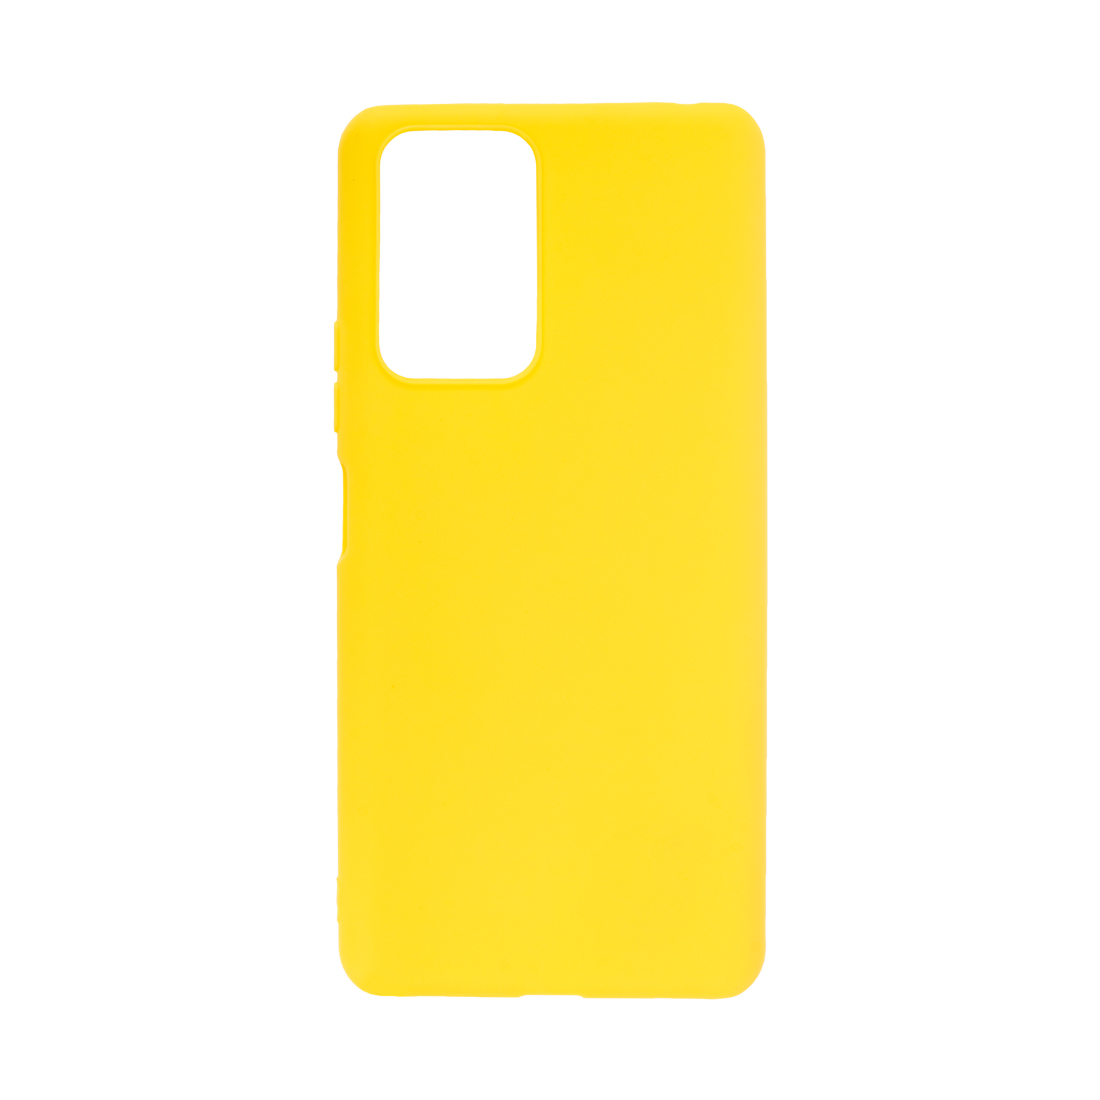 картинка Чехол для телефона X-Game XG-PR77 для Redmi Note 10 Pro TPU Жёлтый от магазина itmag.kz